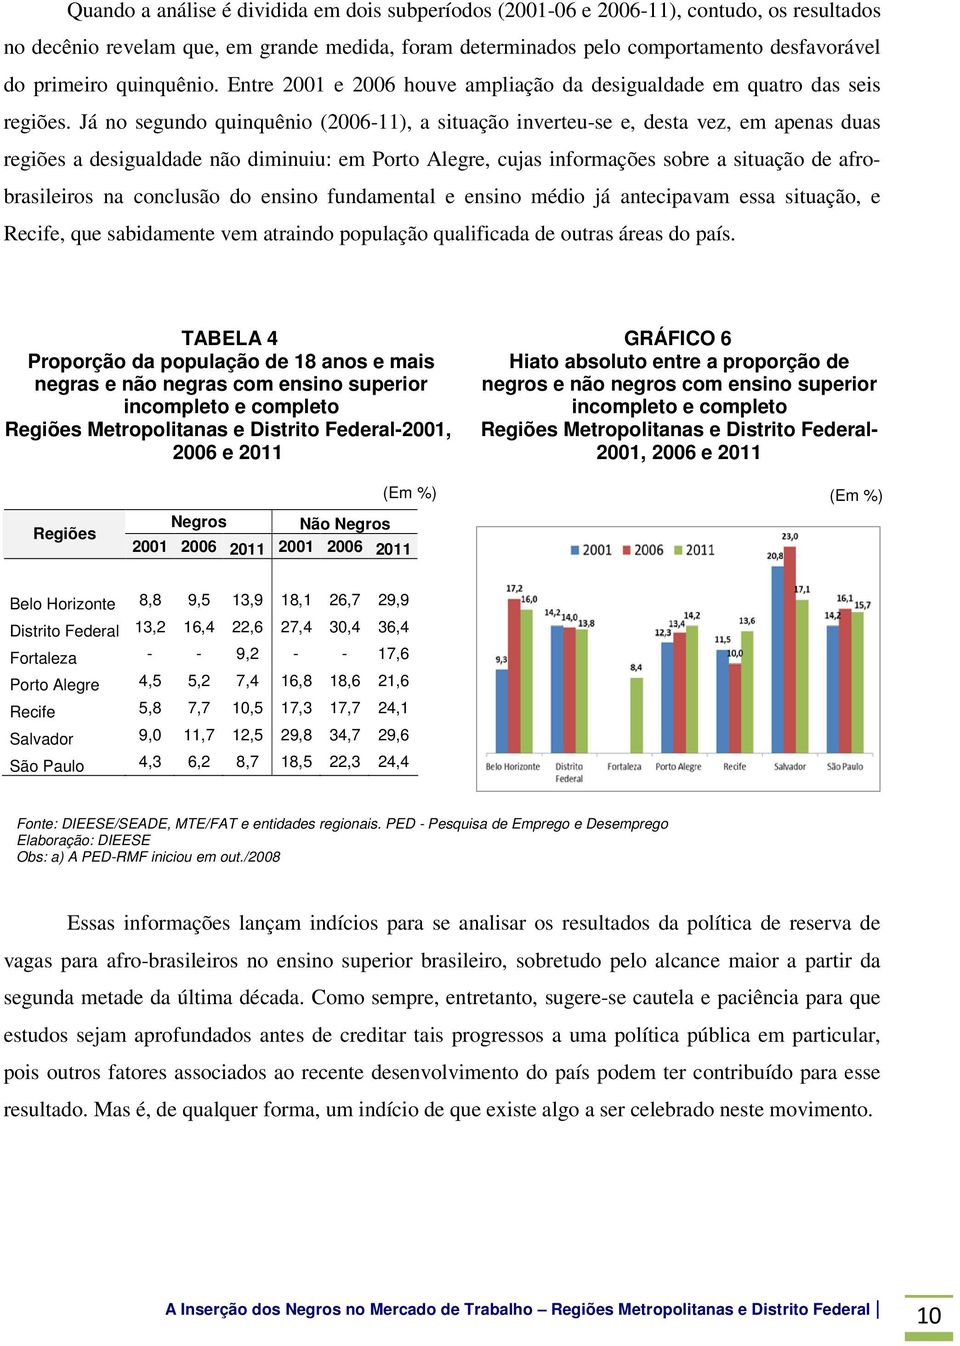 Já no segundo quinquênio (2006-11), a situação inverteu-se e, desta vez, em apenas duas regiões a desigualdade não diminuiu: em Porto Alegre, cujas informações sobre a situação de afrobrasileiros na